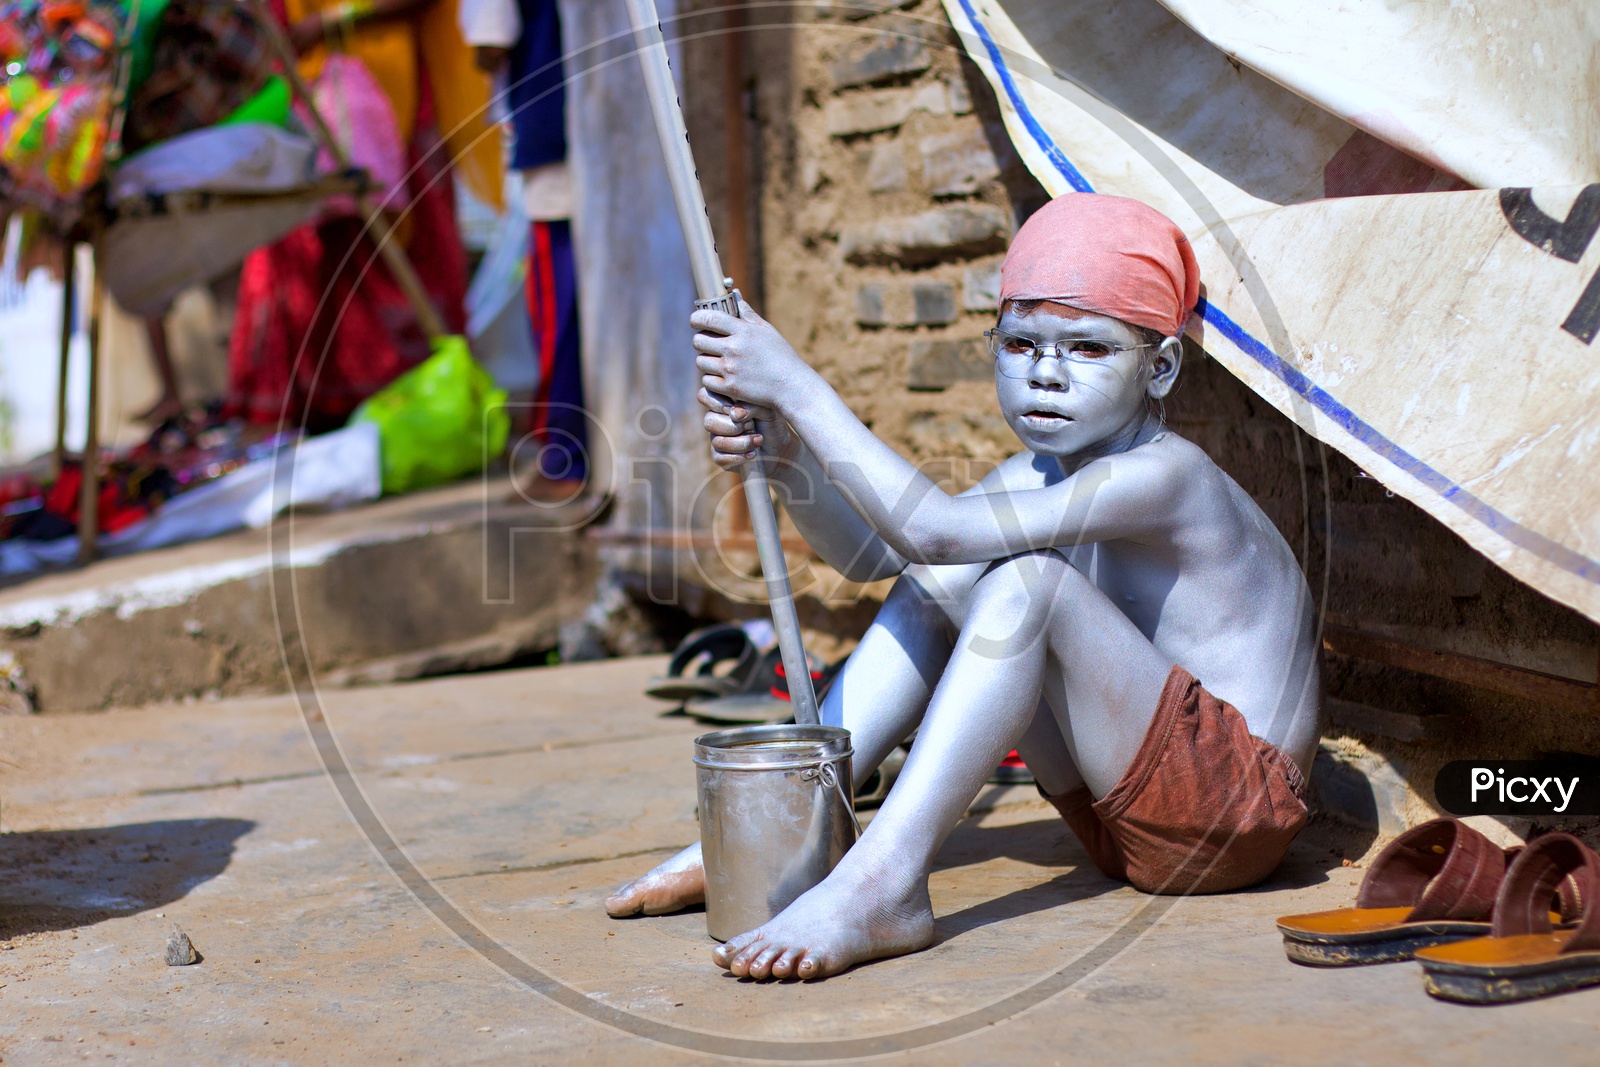 Small kid painted himself as Gandhi.